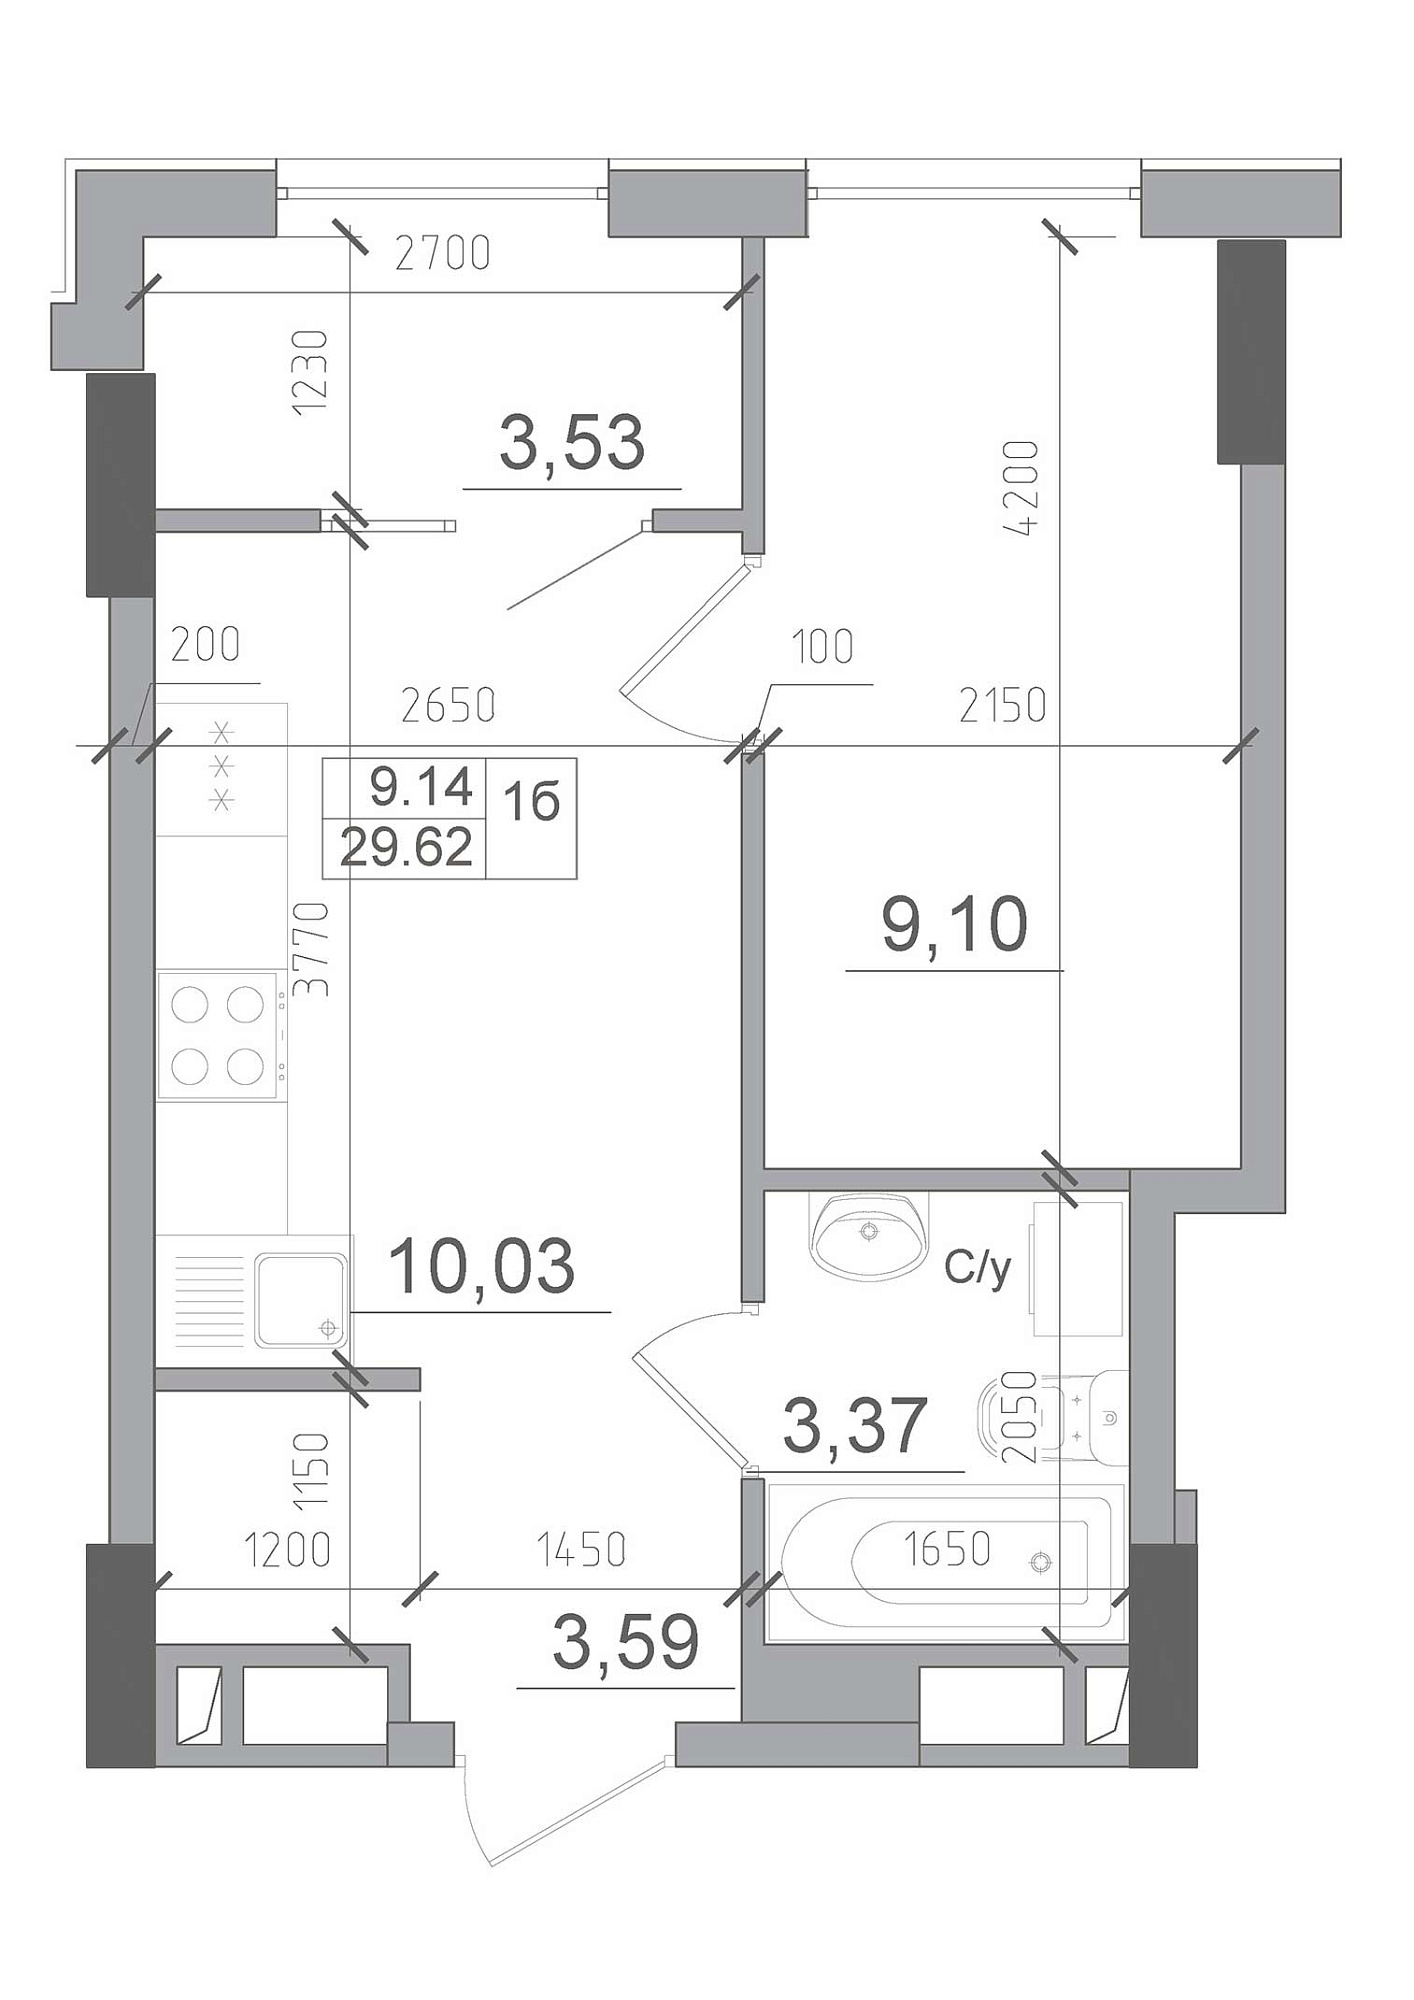 Планування 1-к квартира площею 29.62м2, AB-22-04/00002.